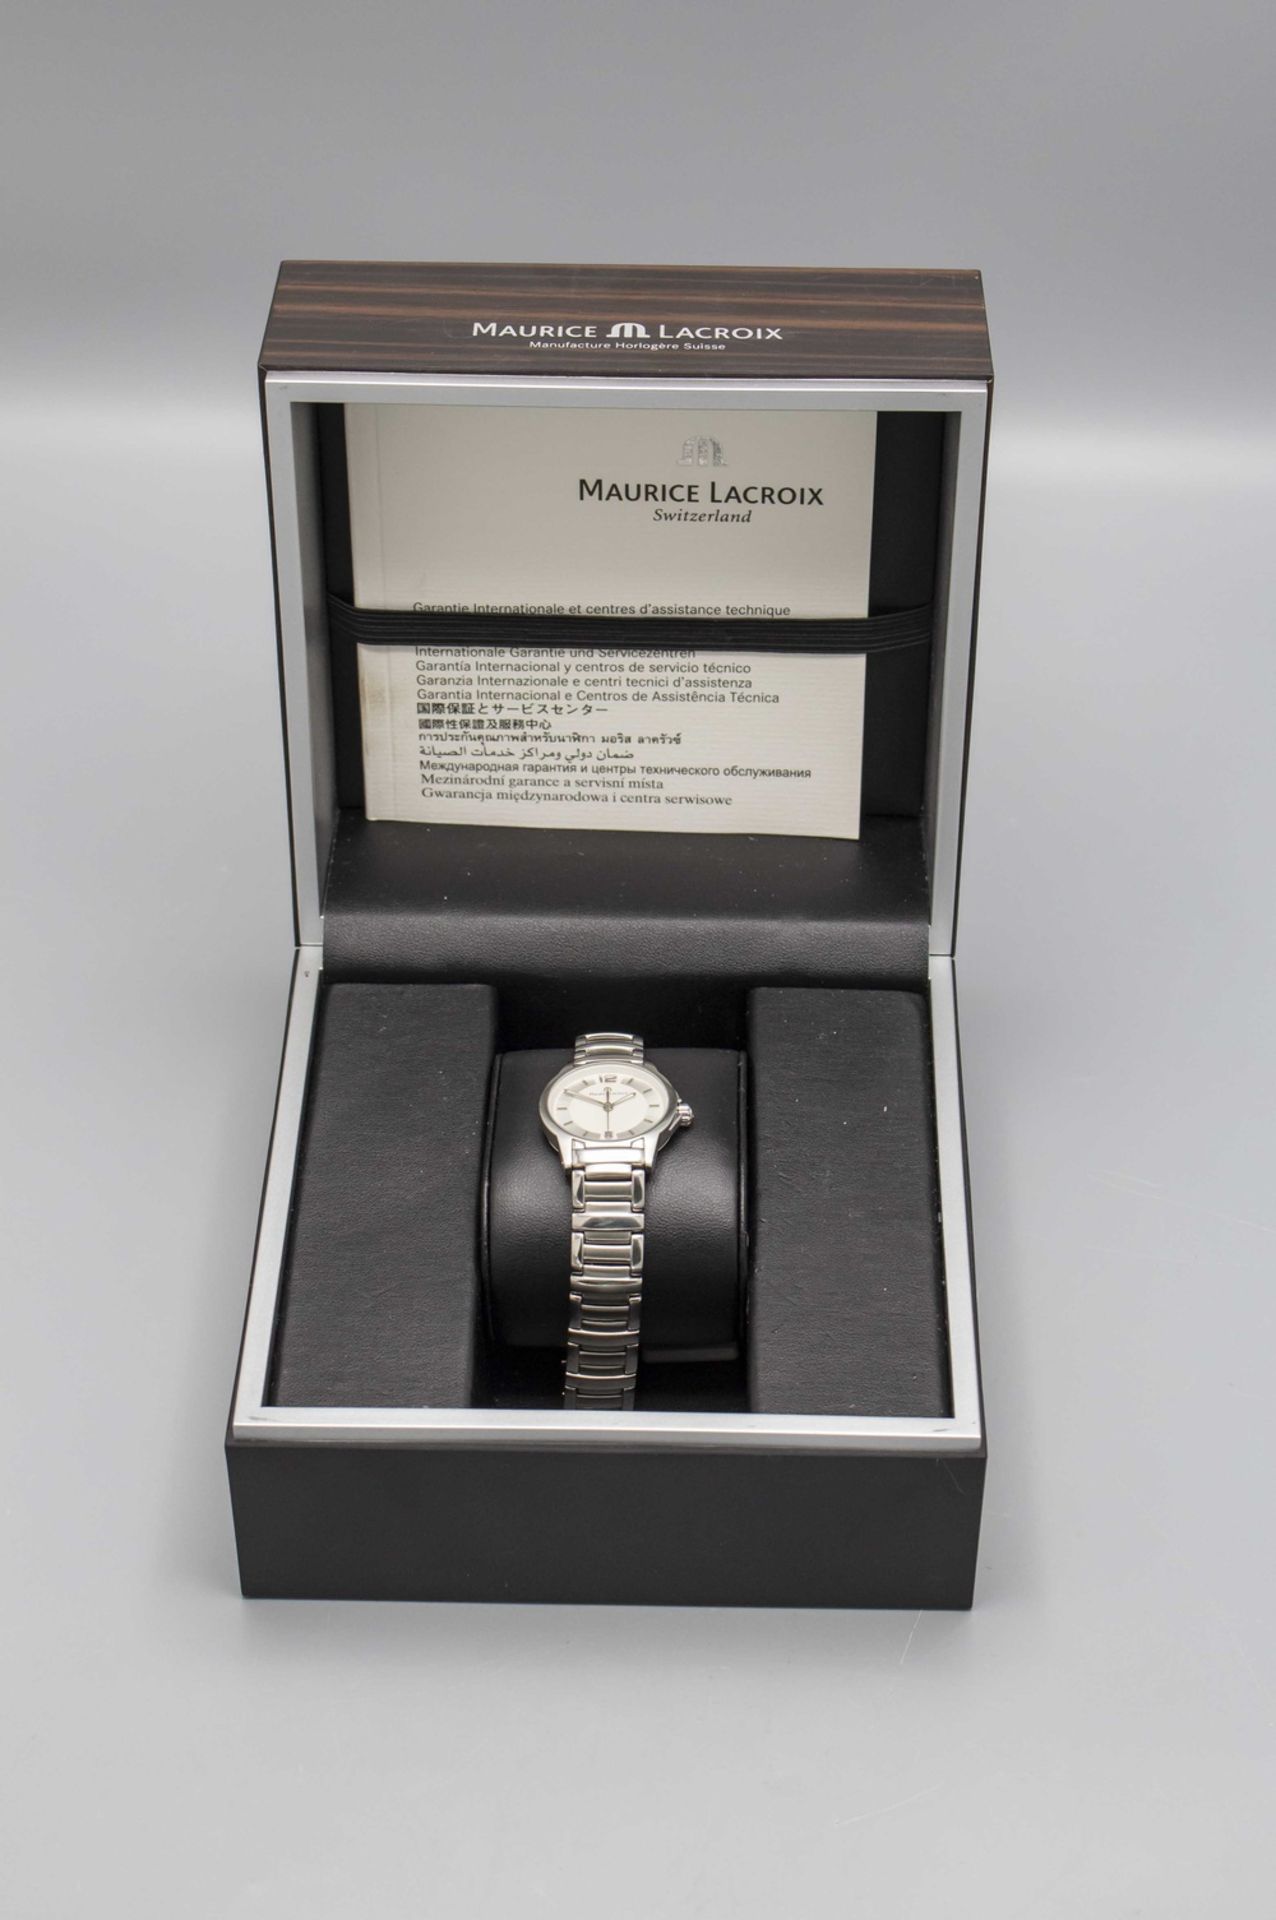 Damenarmbanduhr / A ladies wristwatch, Maurice Lacroix, Switzerland, mit Originalbox - Bild 3 aus 6